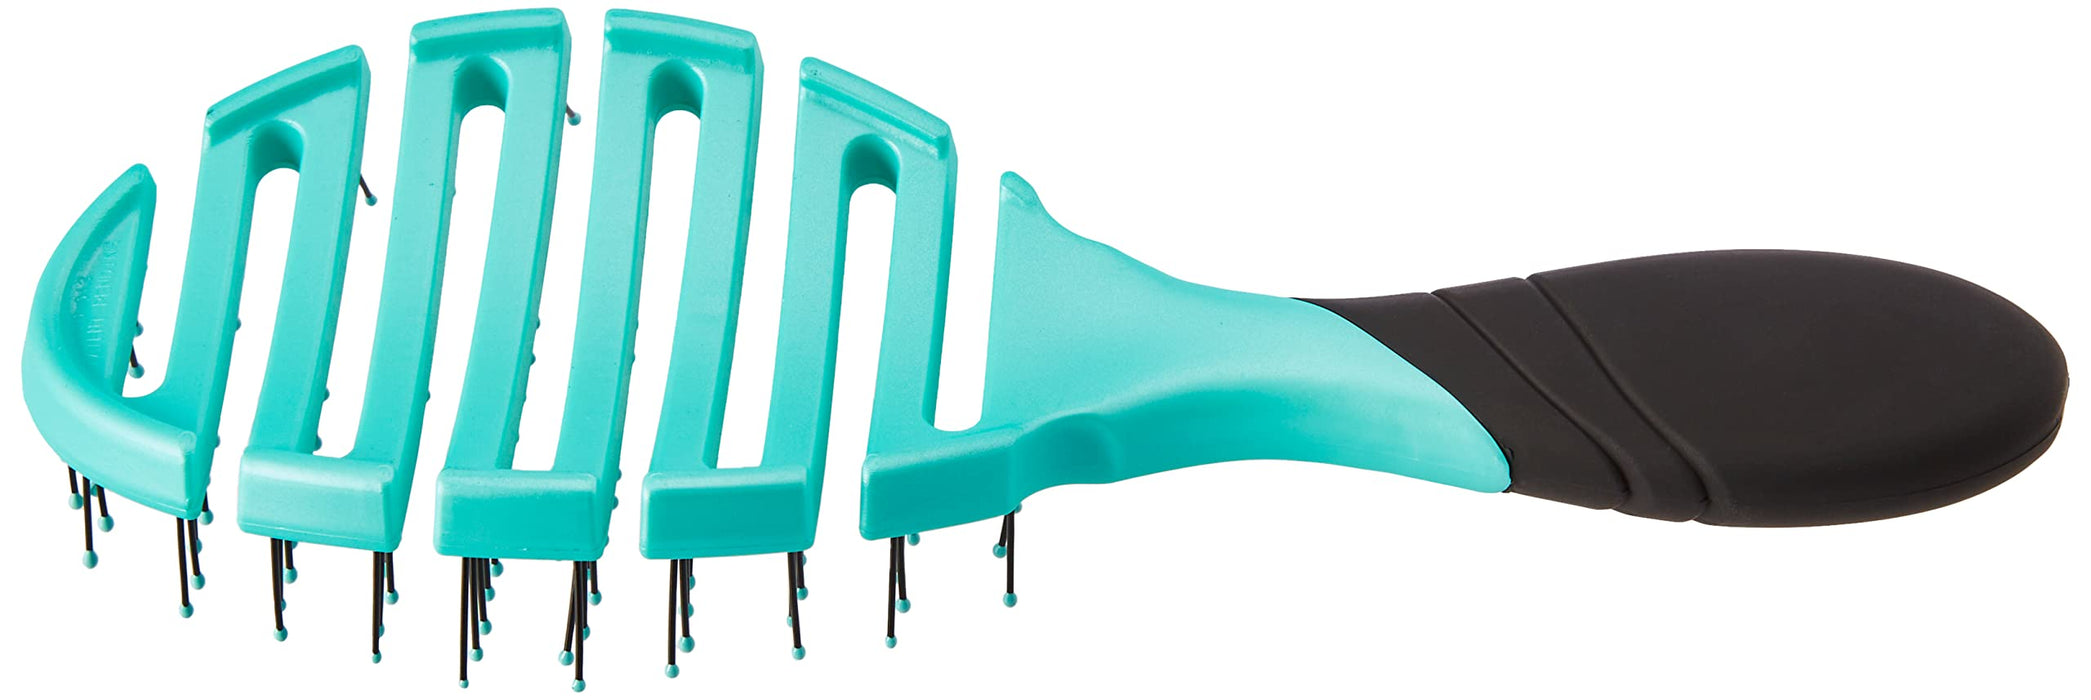 Wet Brush Pro Flex sucha szczotka - niebieska od For Unisex - 1 szt. szczotka do włosów